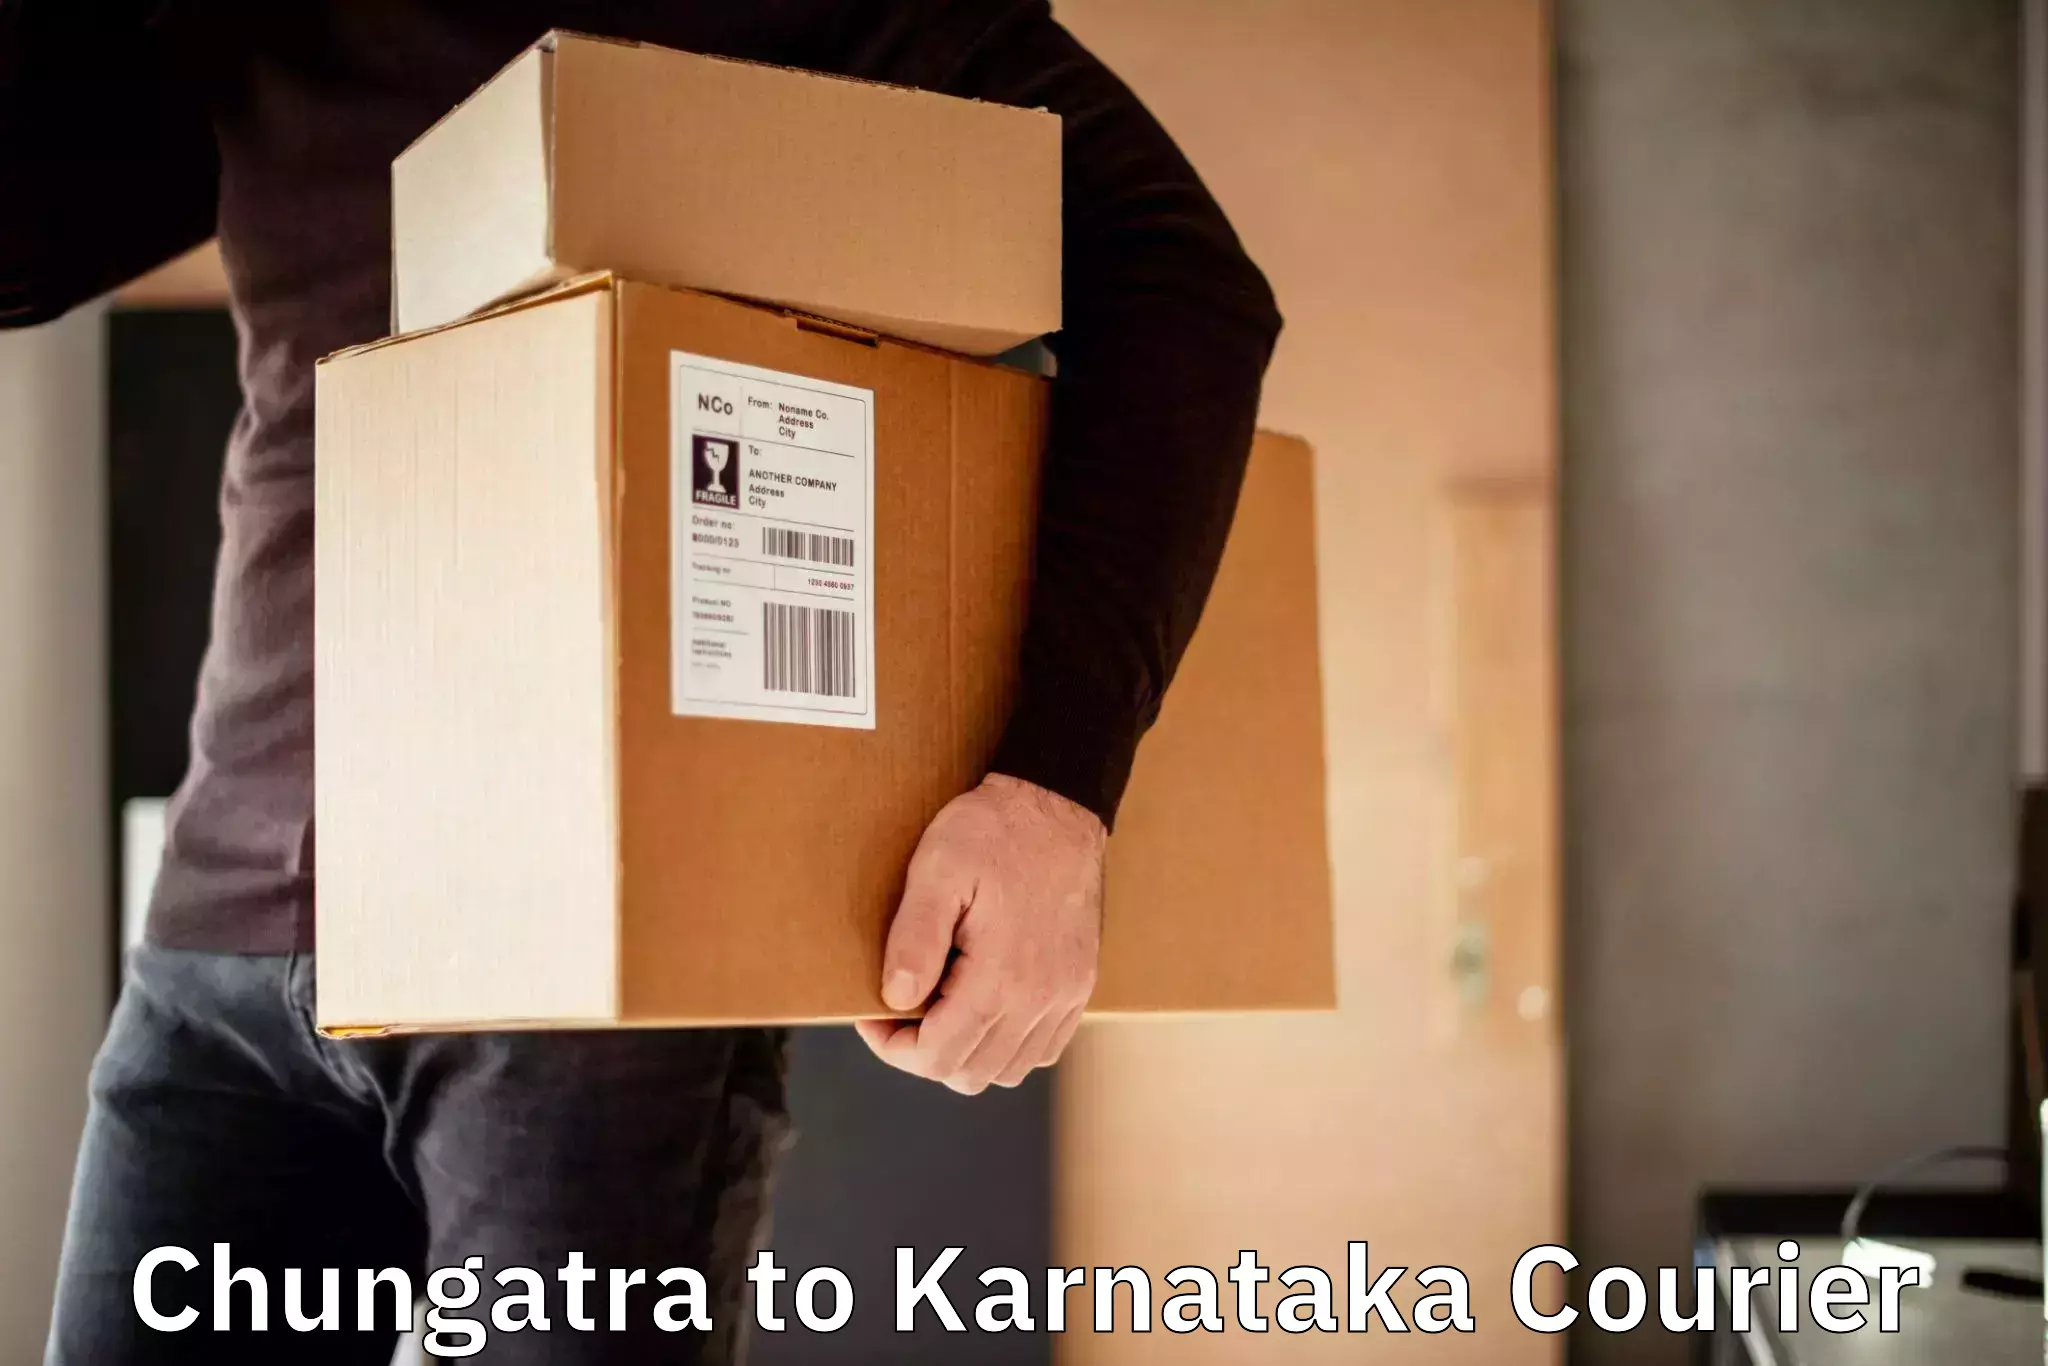 Courier service efficiency Chungatra to Kanakapura